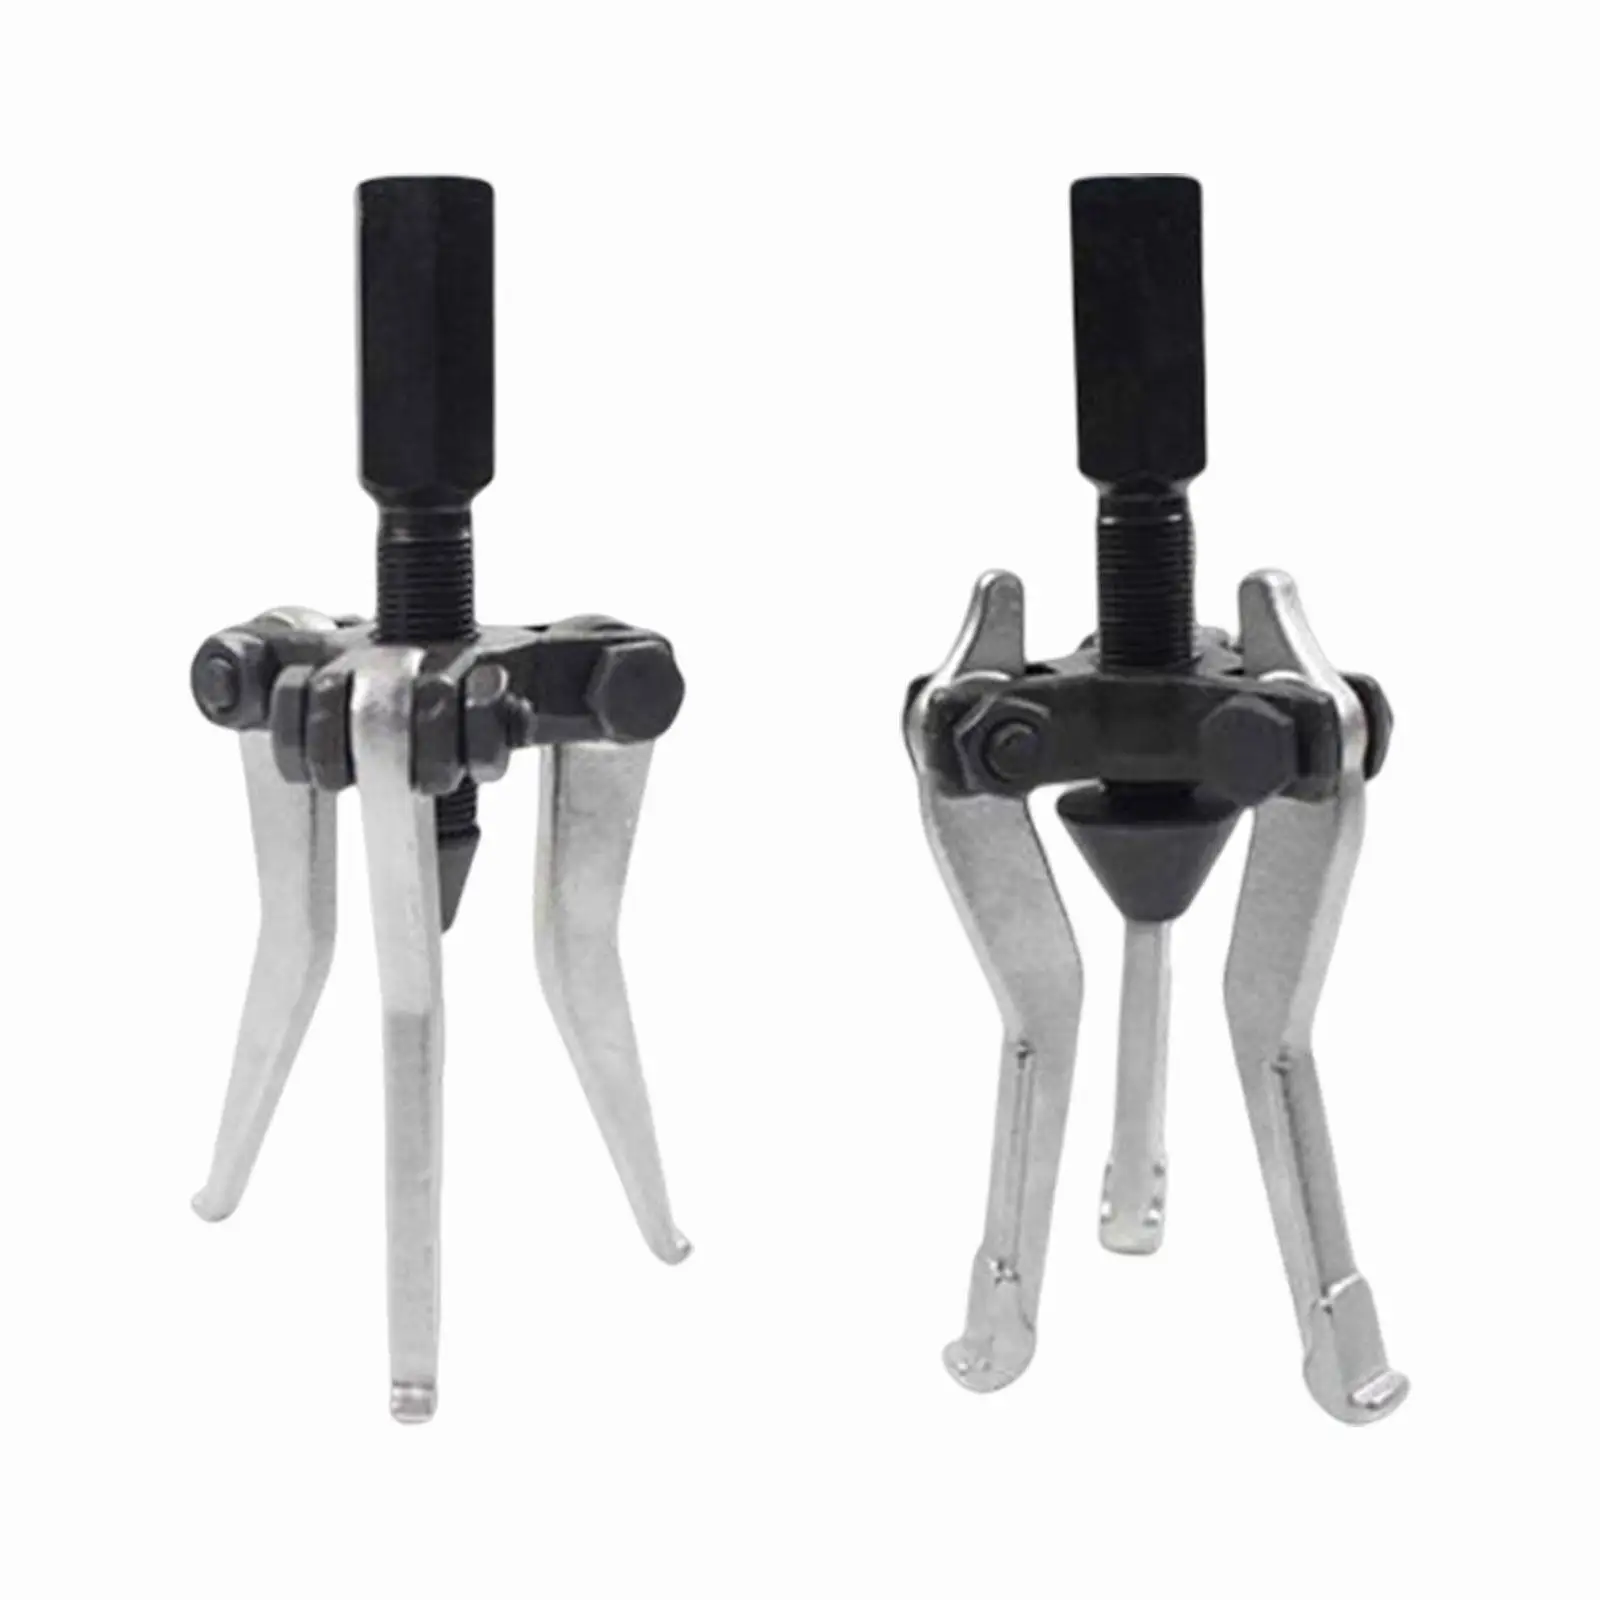 

3 Jaw Puller Metal Adjustable High Strength Heavy Duty Hub Puller Bearing Removal Tool for Flywheels Pulleys Gears Bearings